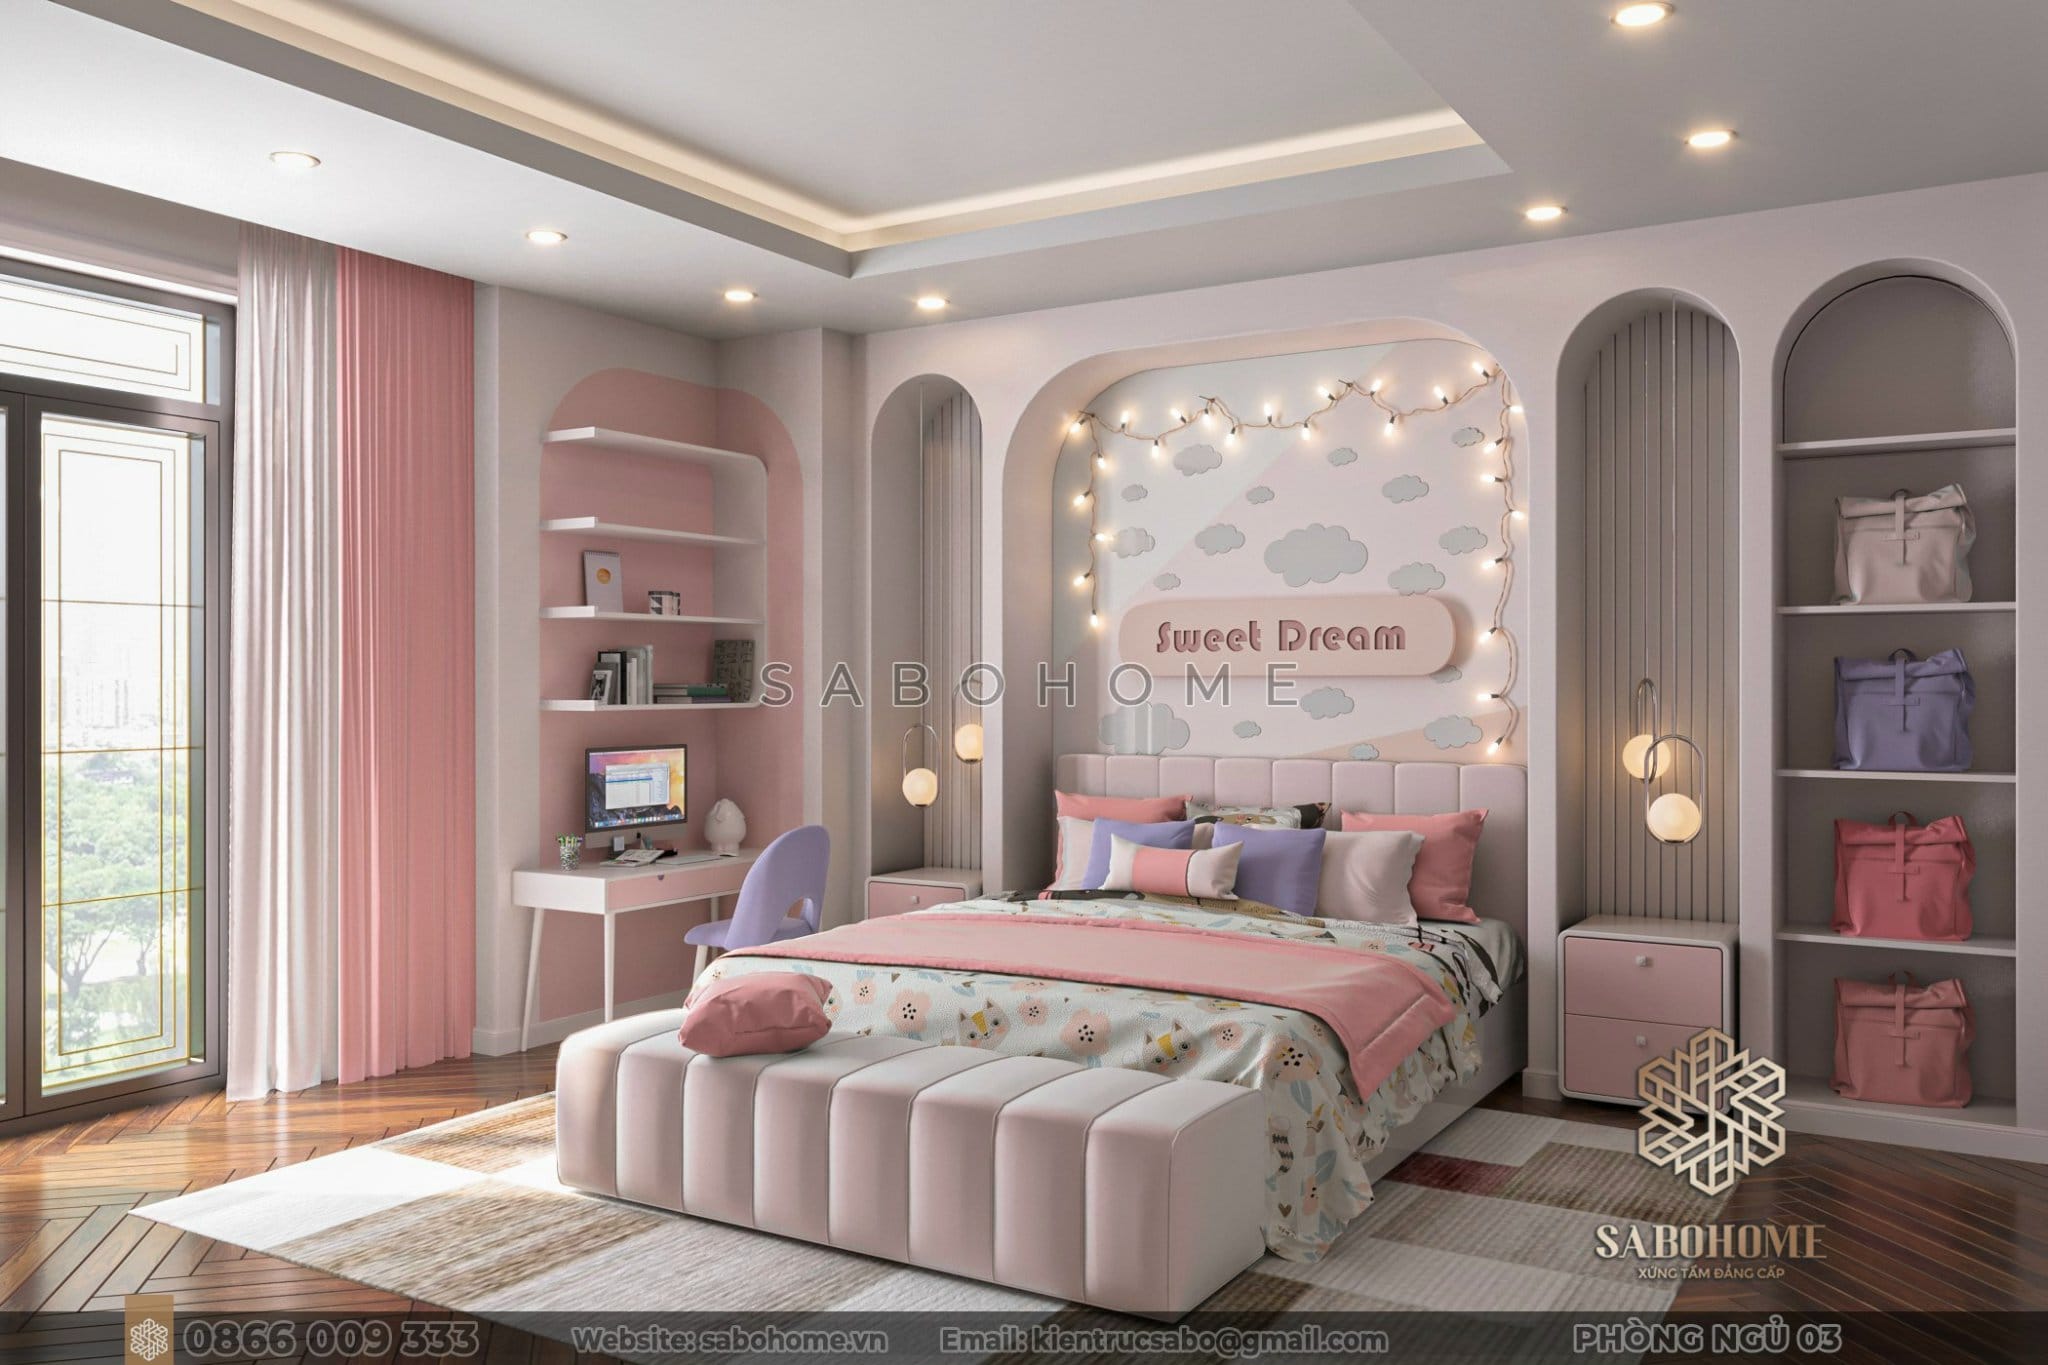 Mẫu phòng ngủ bé gái: Nơi mọi ước mơ và khao khát trở thành hiện thực